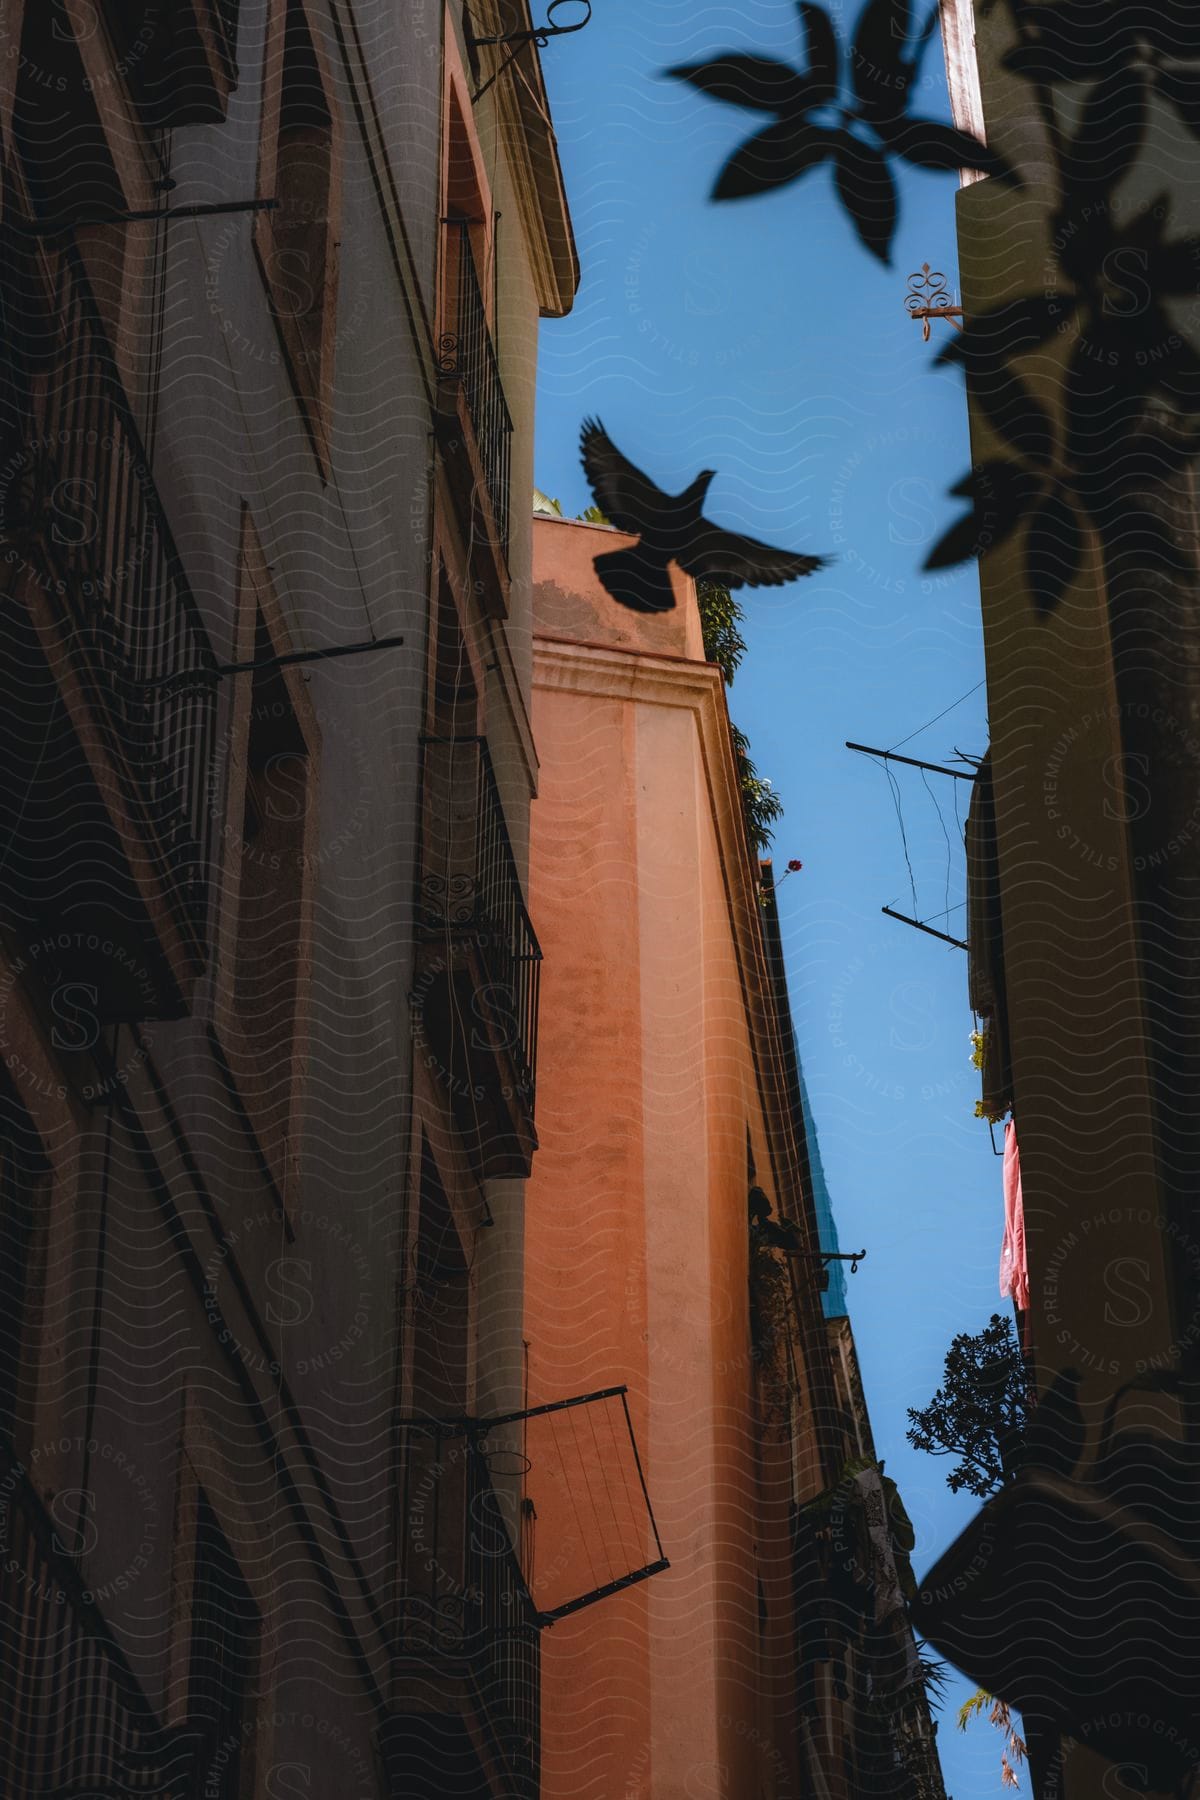 Bird flying between apartment buildings